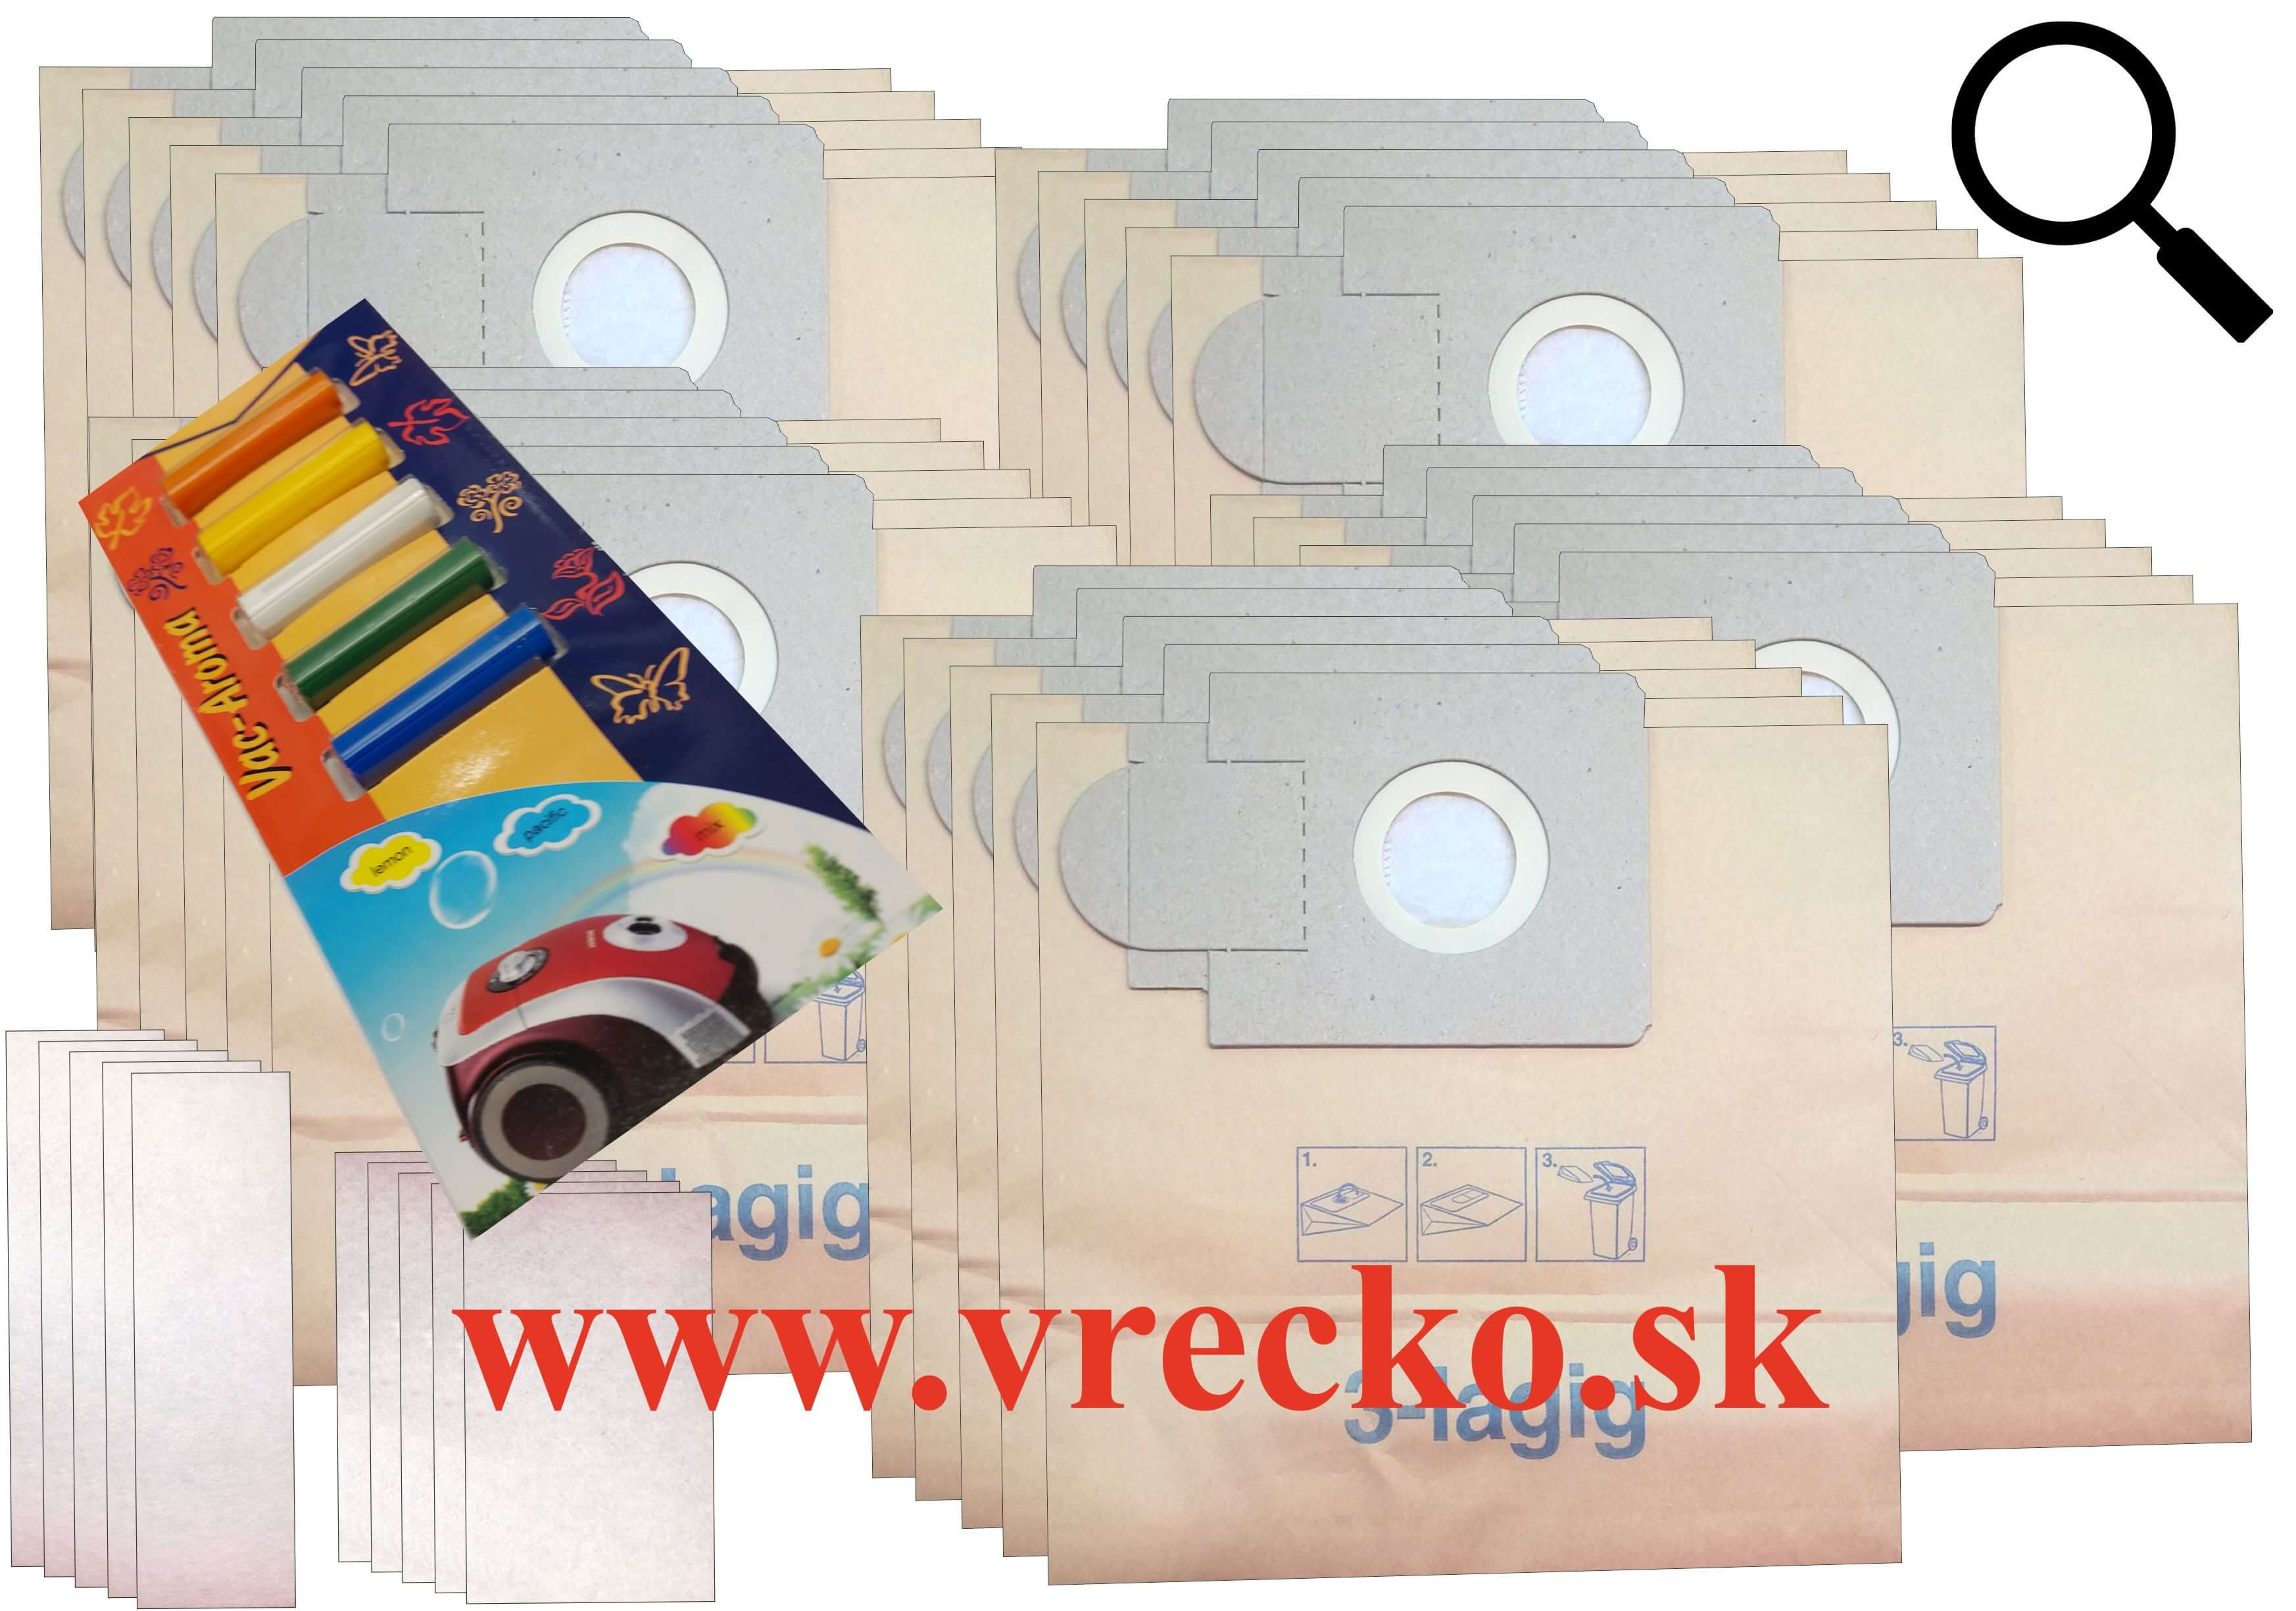 Eio Futura Serie - zvýhodnené balenie typ XL - papierové vrecká do vysávača s dopravou zdarma + 5ks rôznych vôní do vysávačov v cene 3,99 ZDARMA (25ks)